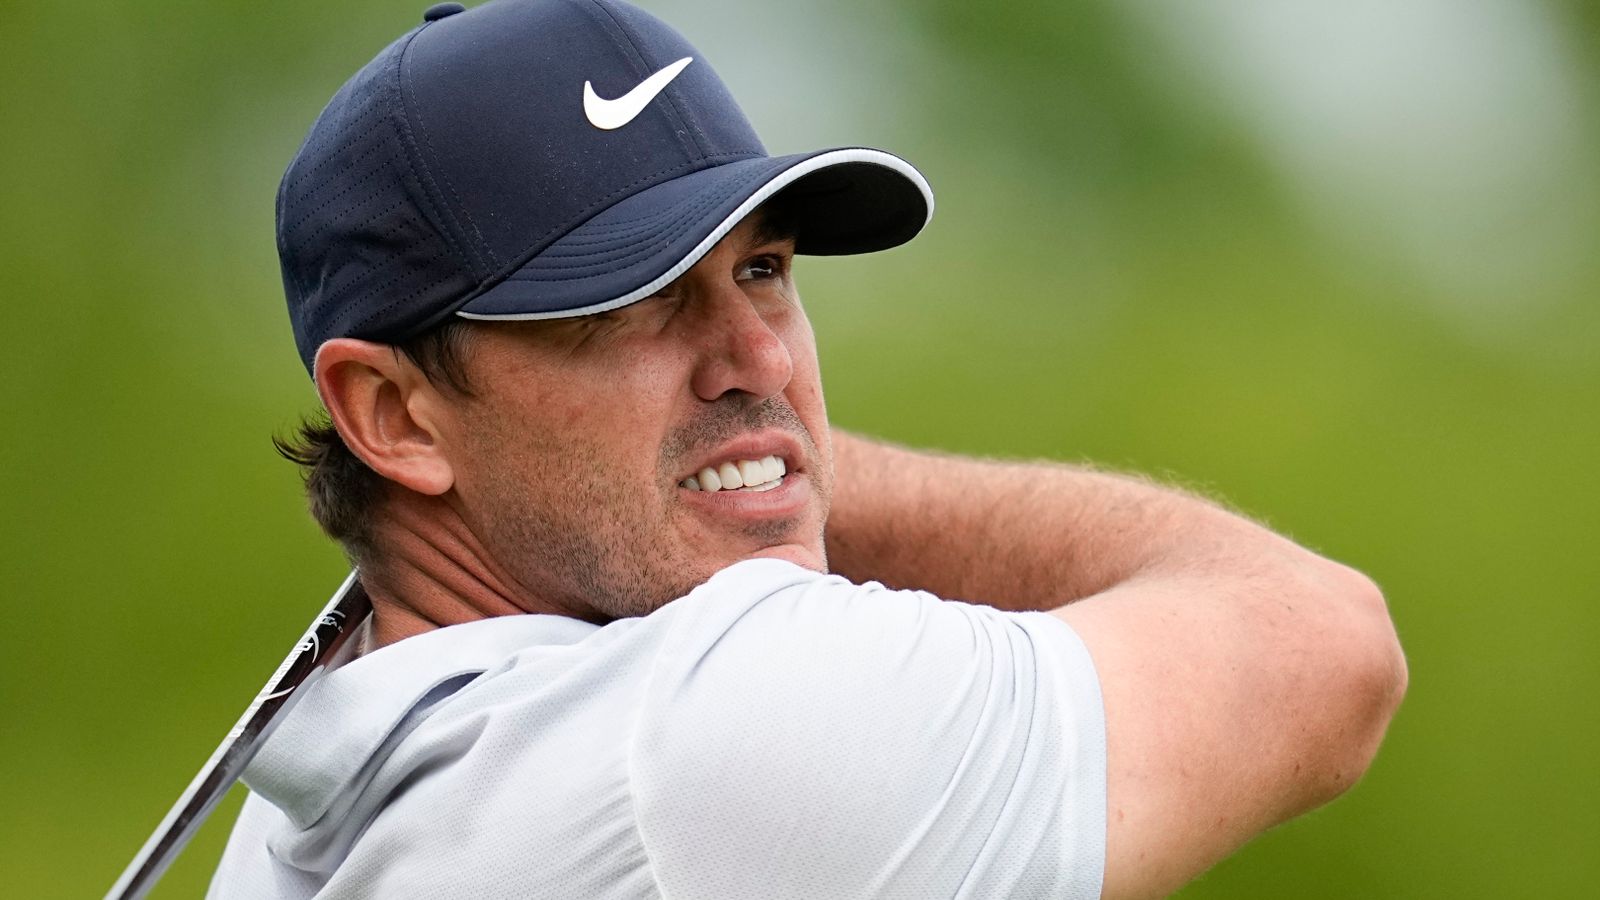 PGA Championship: Брукс Коепка лидирует у Виктора Ховланда после победы в 3-м раунде 66 на Оук-Хилл |  Новости гольфа